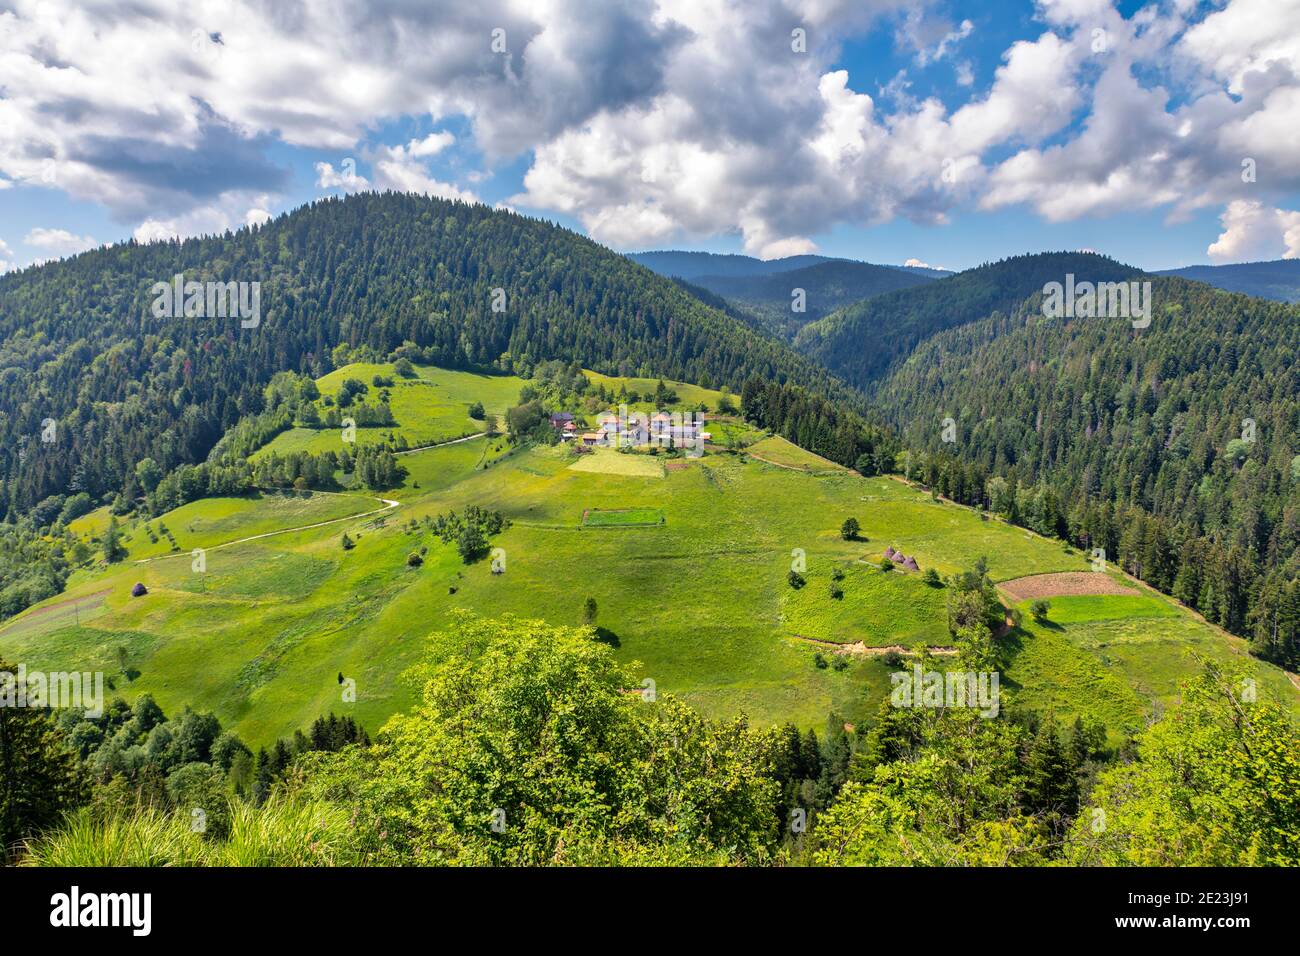 Bella montagna Zlatar, popolare destinazione turistica. Verdi pinete, colline e prati. Serbia Foto Stock